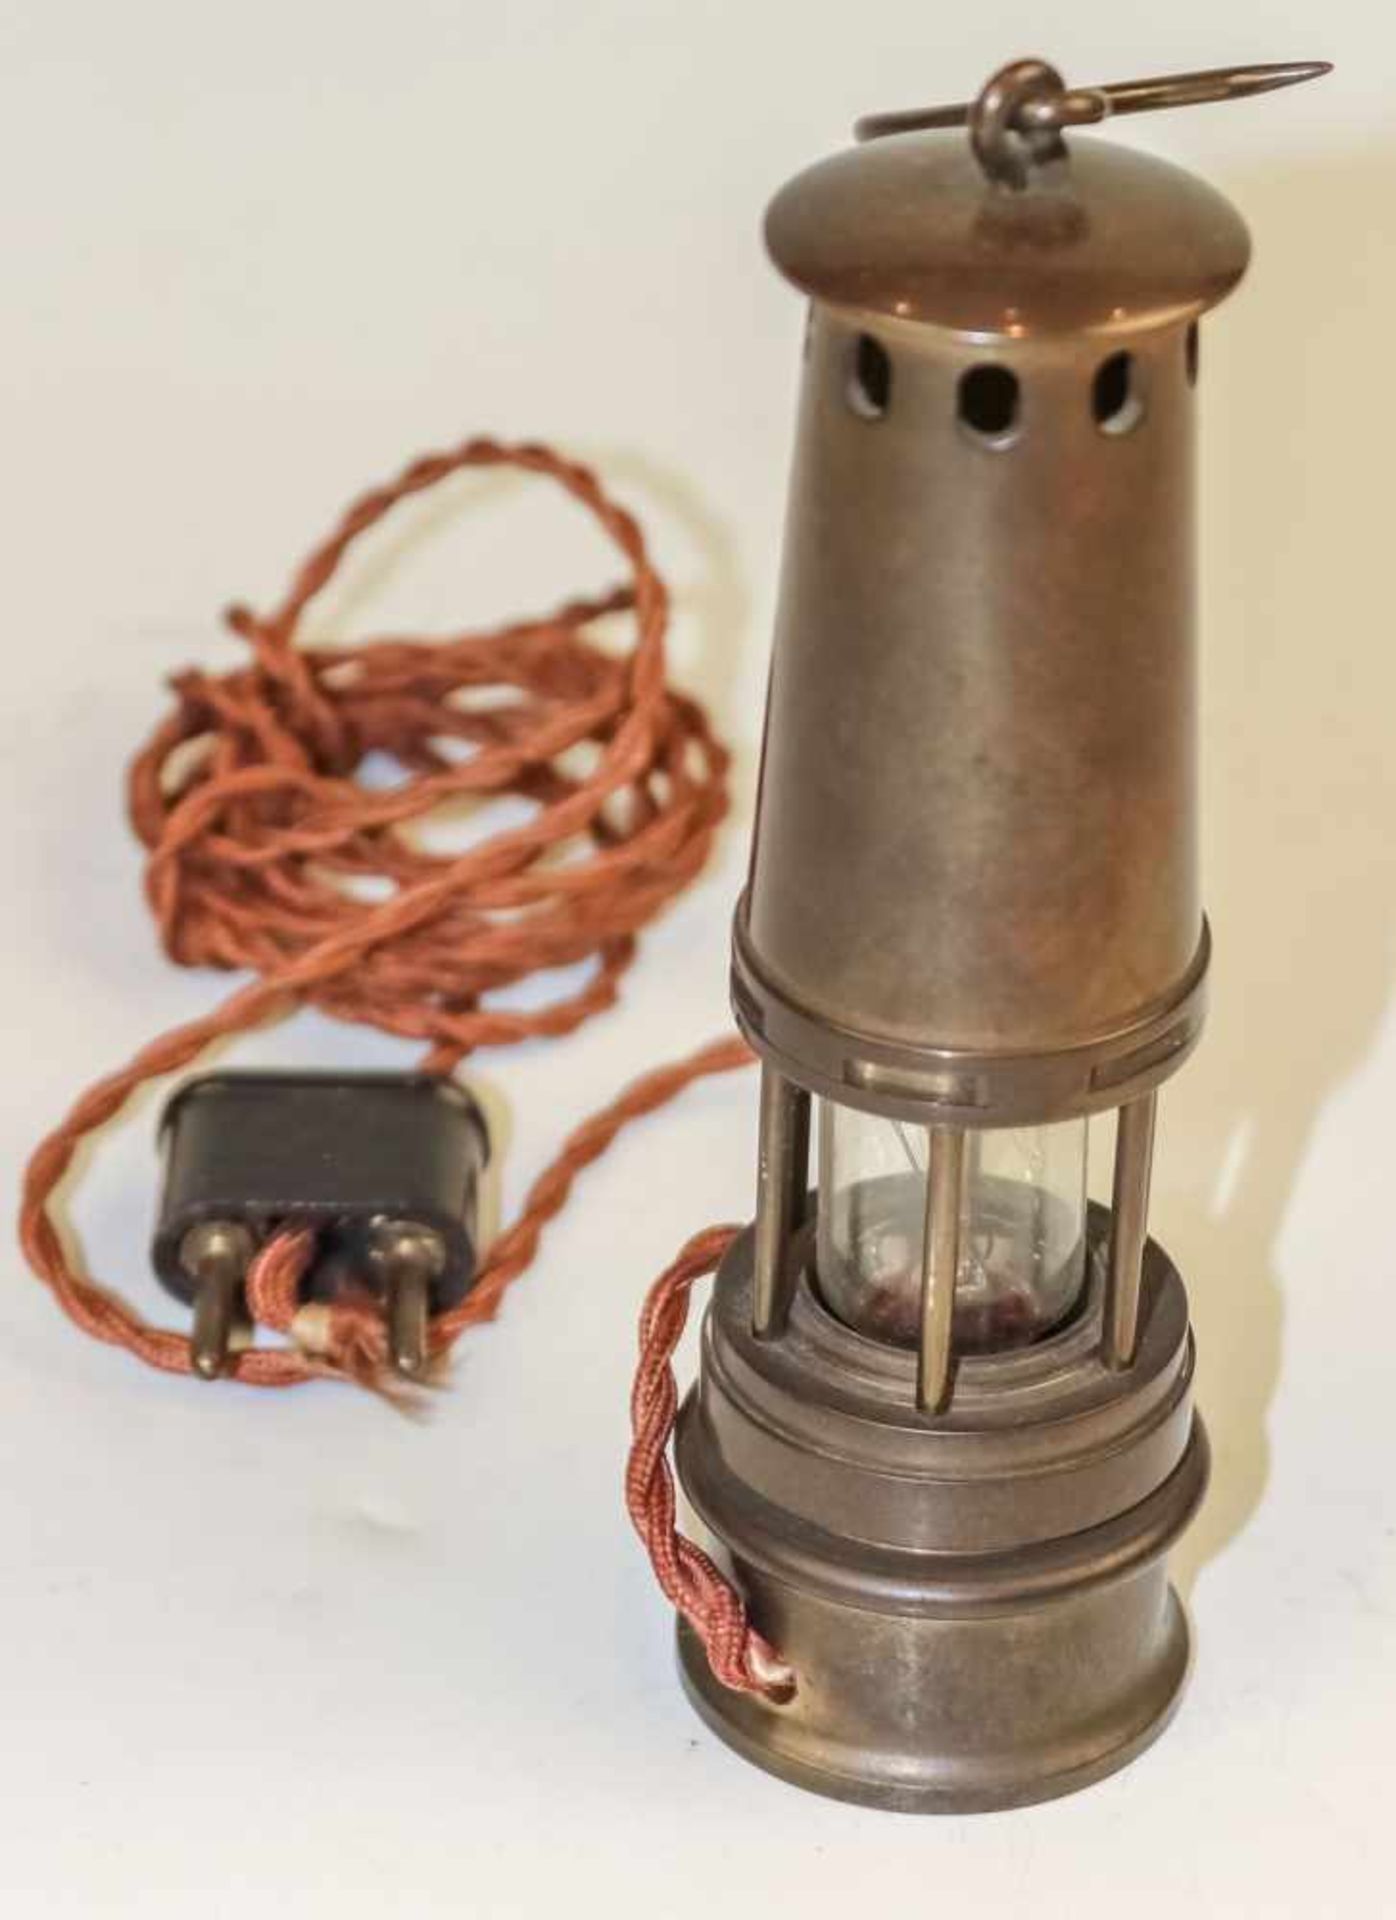 Miniatur-GrubenlampeMessinggehäuse mit Tragehaken. Als Lampe elektrifiziert. H. 16 cm.(58253)